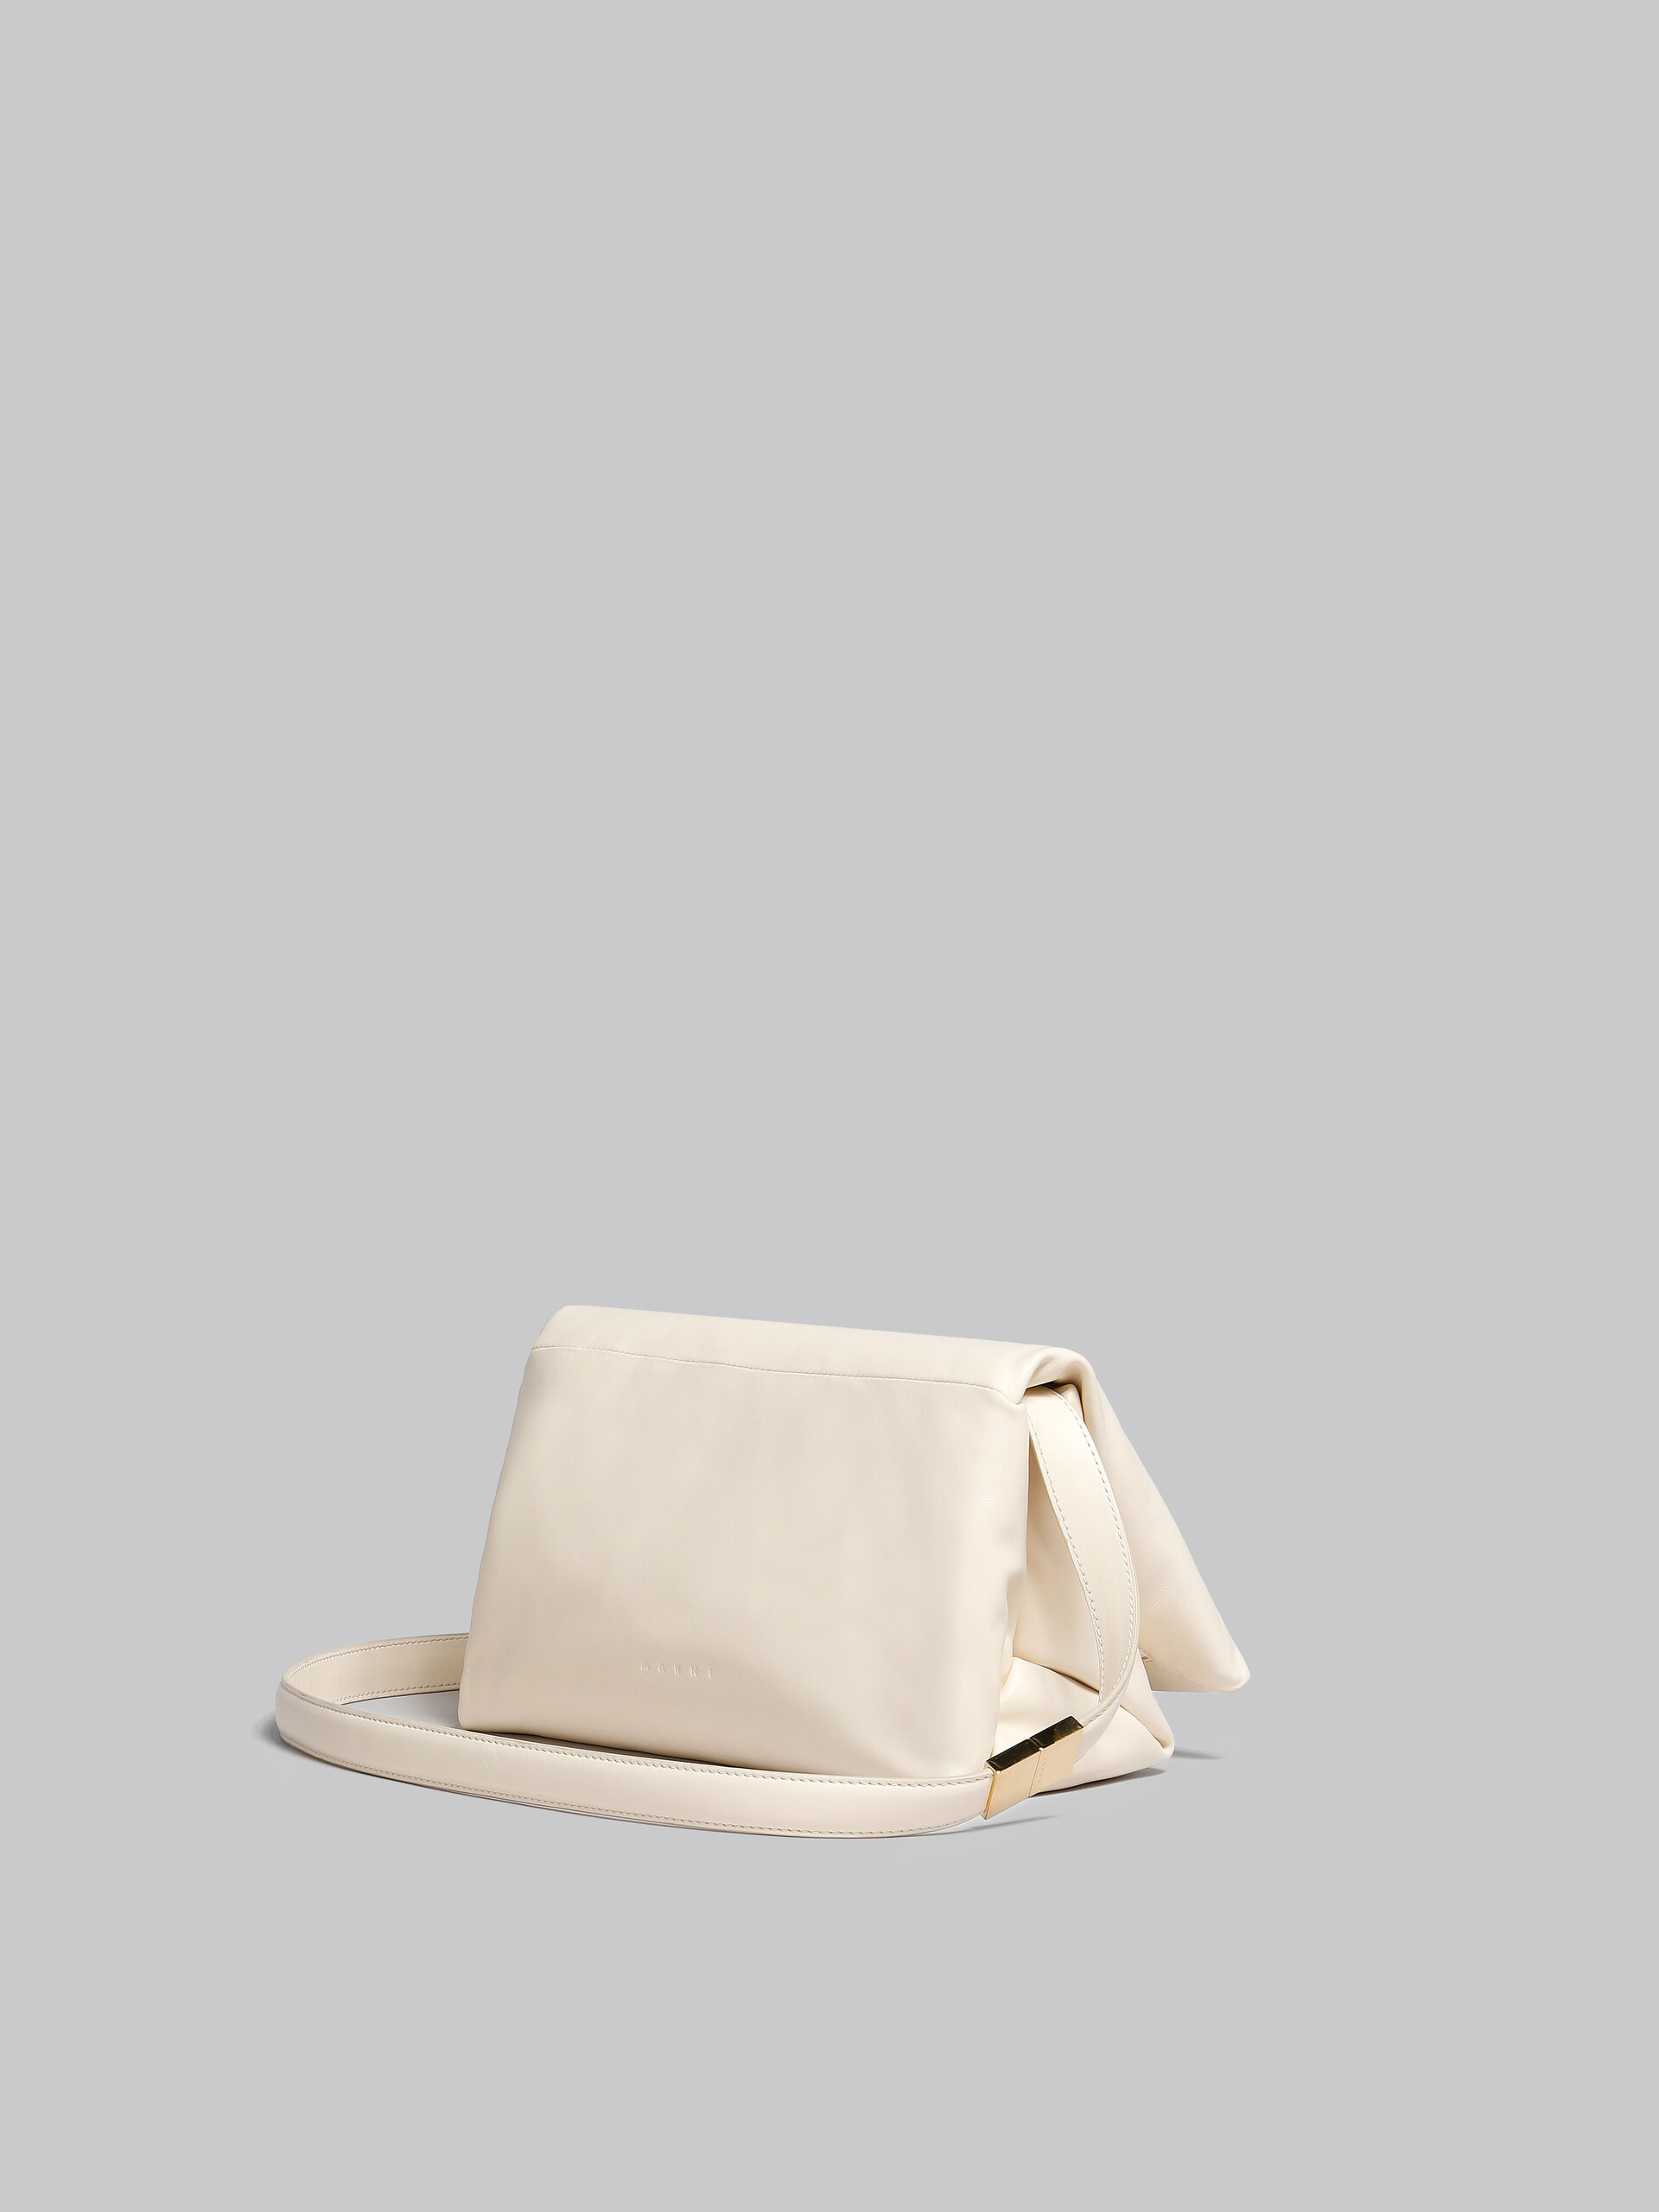 Black leather Prisma shoulder bag - Shoulder Bag - Image 3